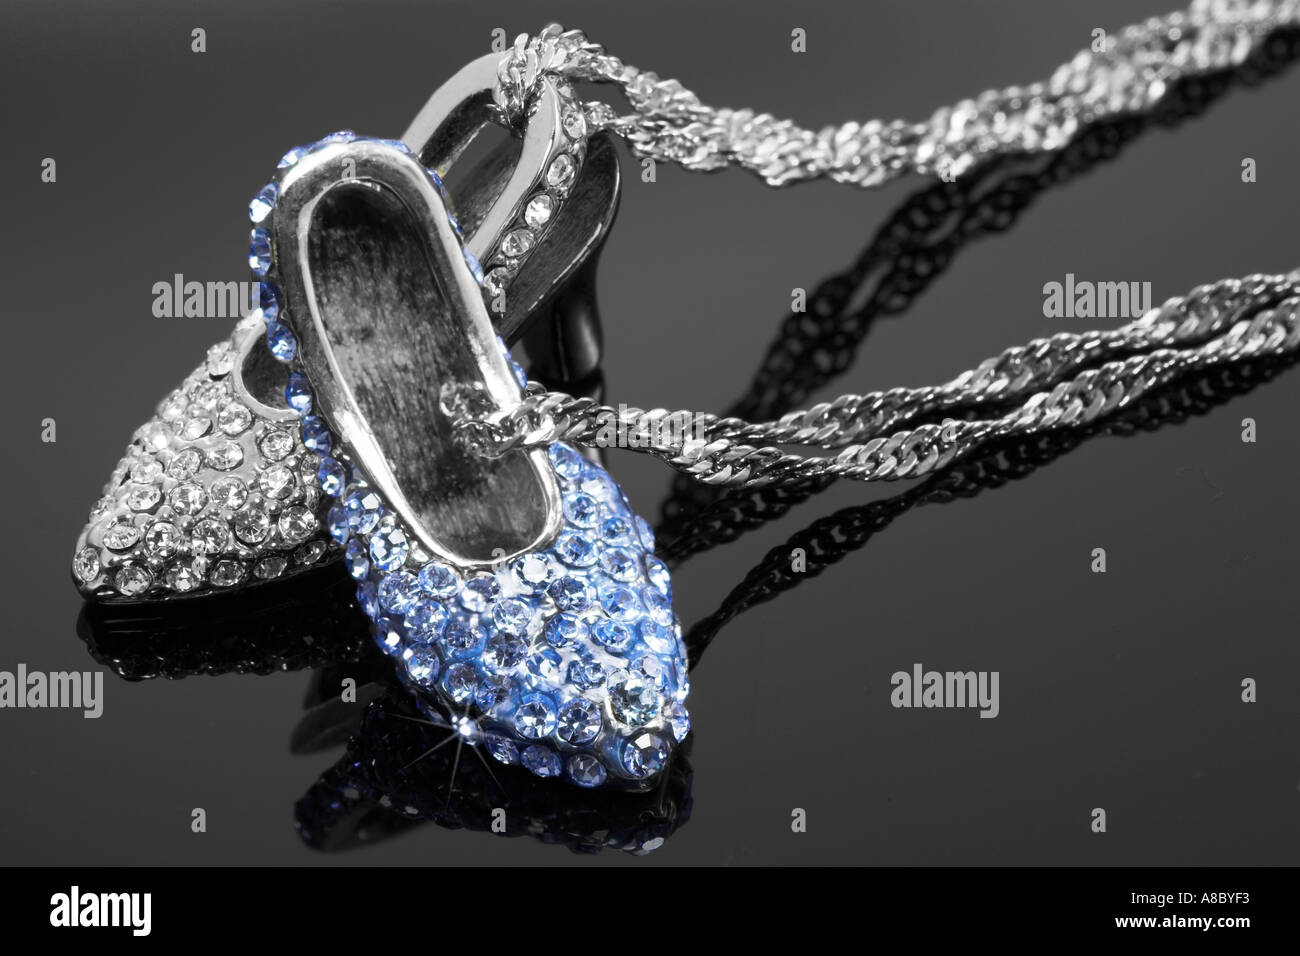 Swarovski Kristall hochhackige Schuhe Halskette auf schwarzem Hintergrund  Stockfotografie - Alamy